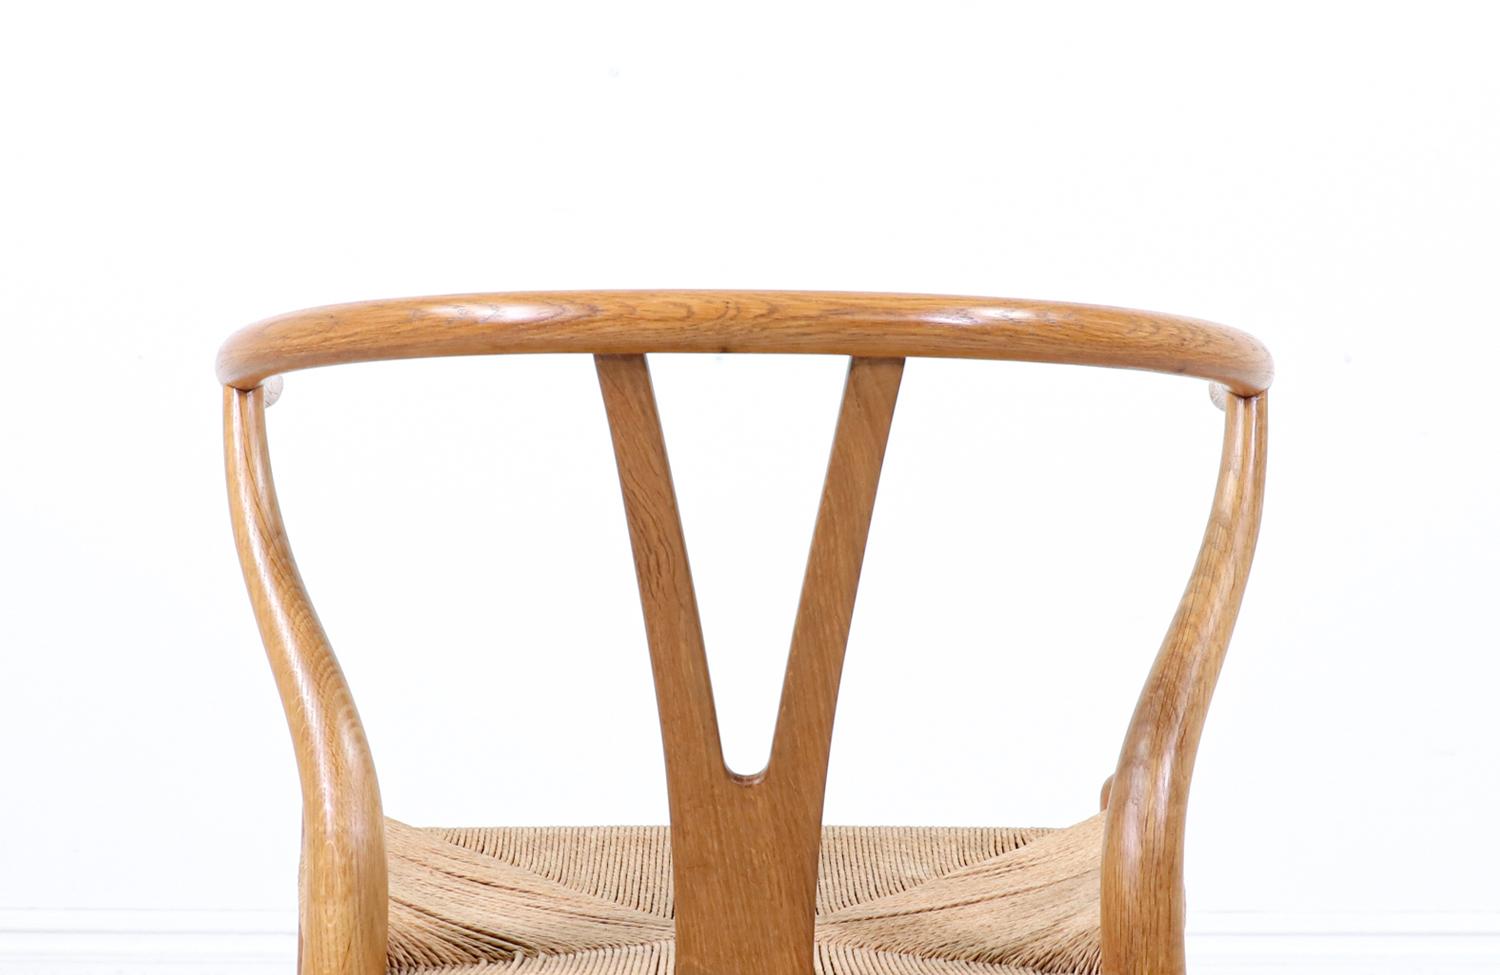 Iconic Hans J. Wegner “Wishbone” Oak Arm Chair for Carl Hansen & Søn For Sale 4